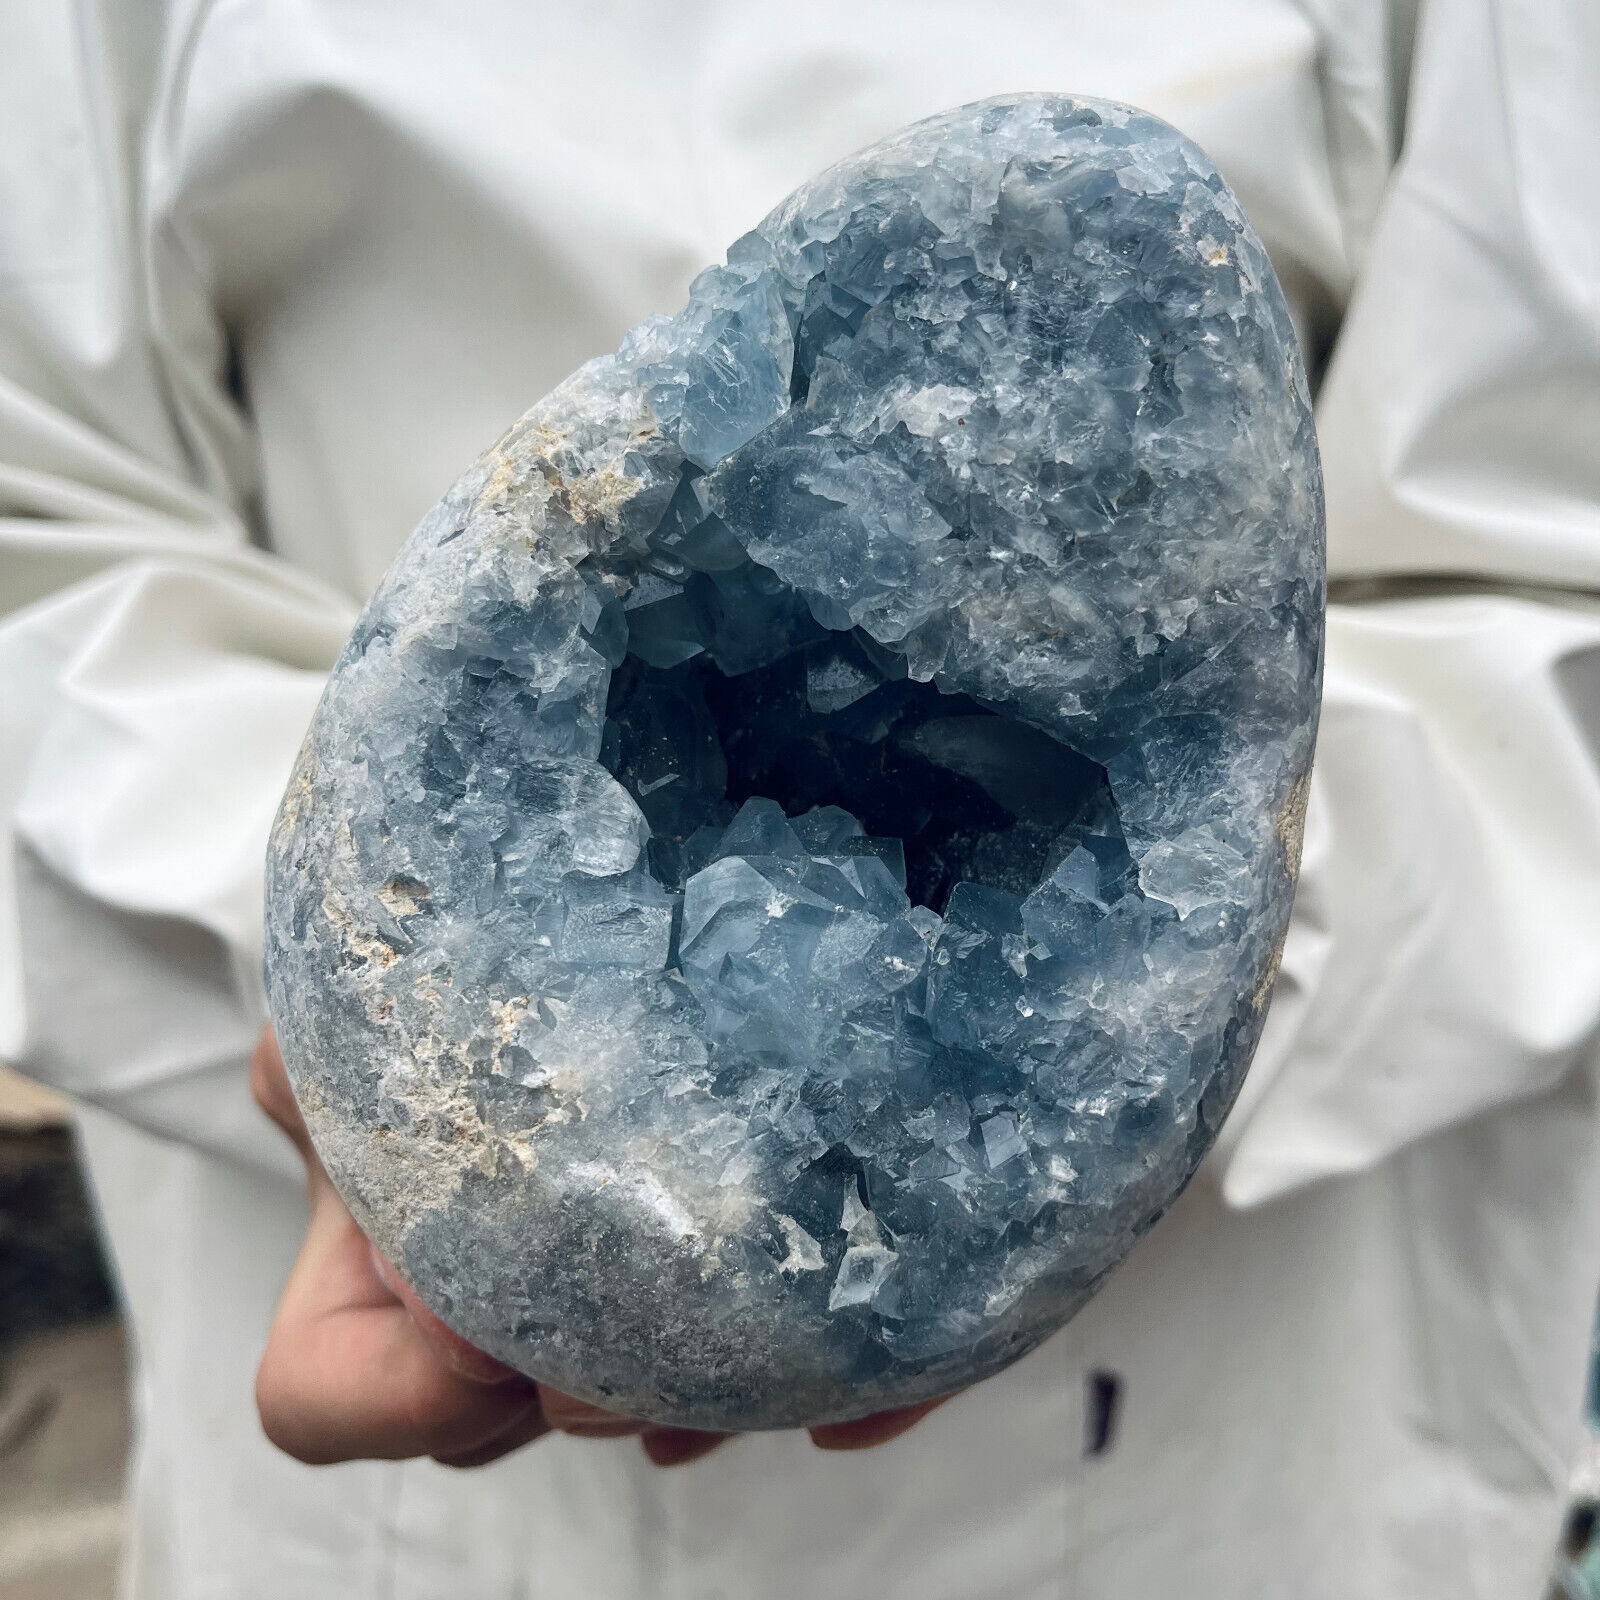 5.1lb Large Natural Blue Celestite Crystal Geode Quartz Cluster Mineral Specime